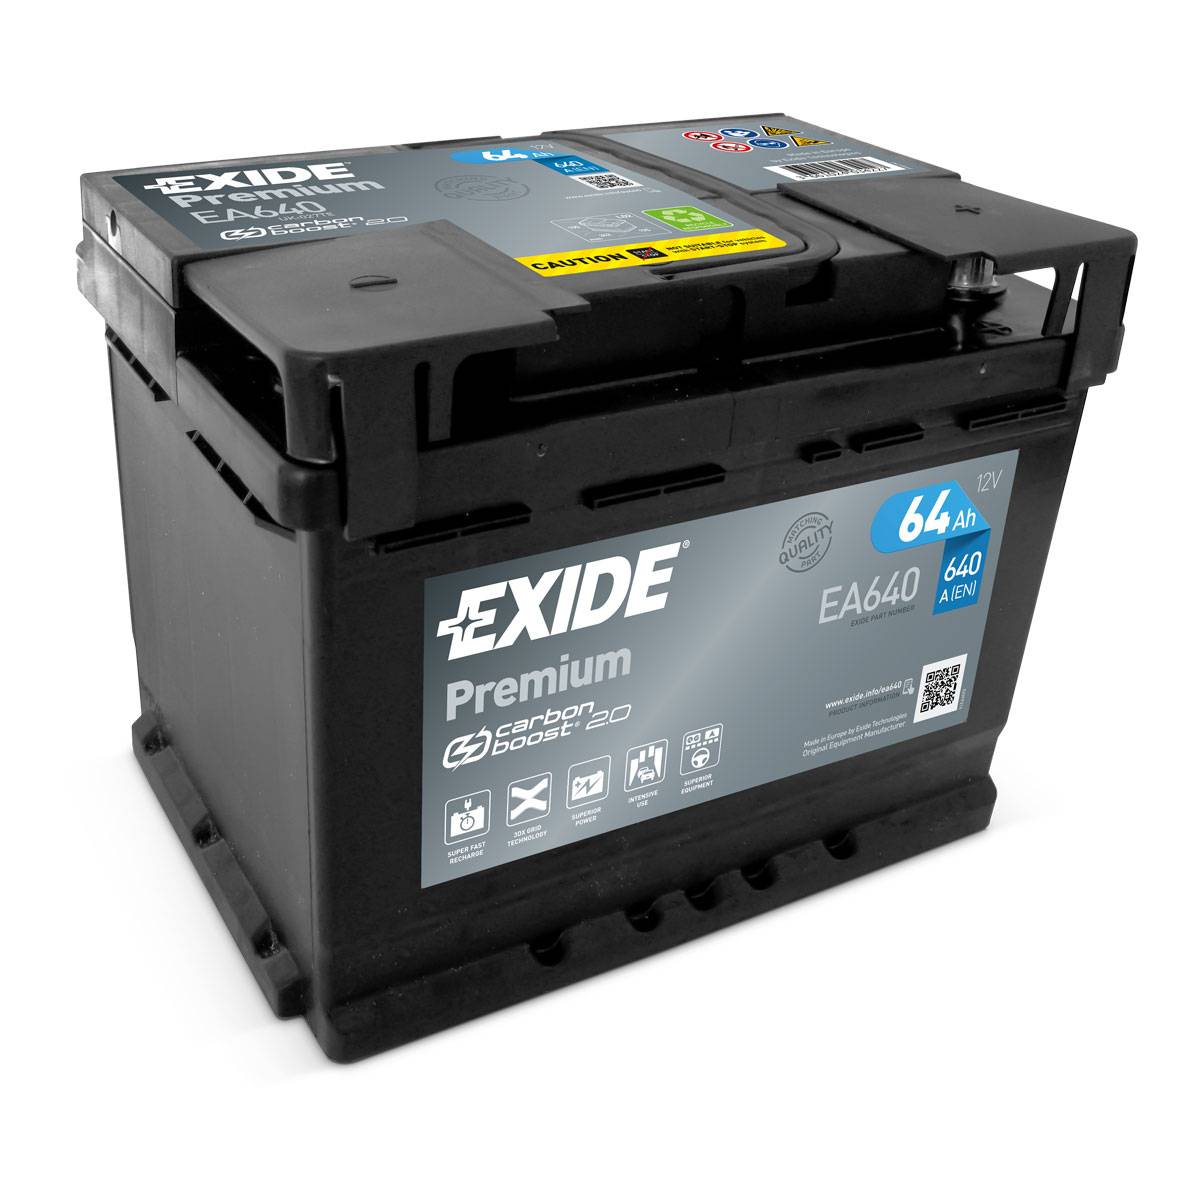 Exide EA640 Premium Carbon Boost 12V 64Ah 640A Autobatterie